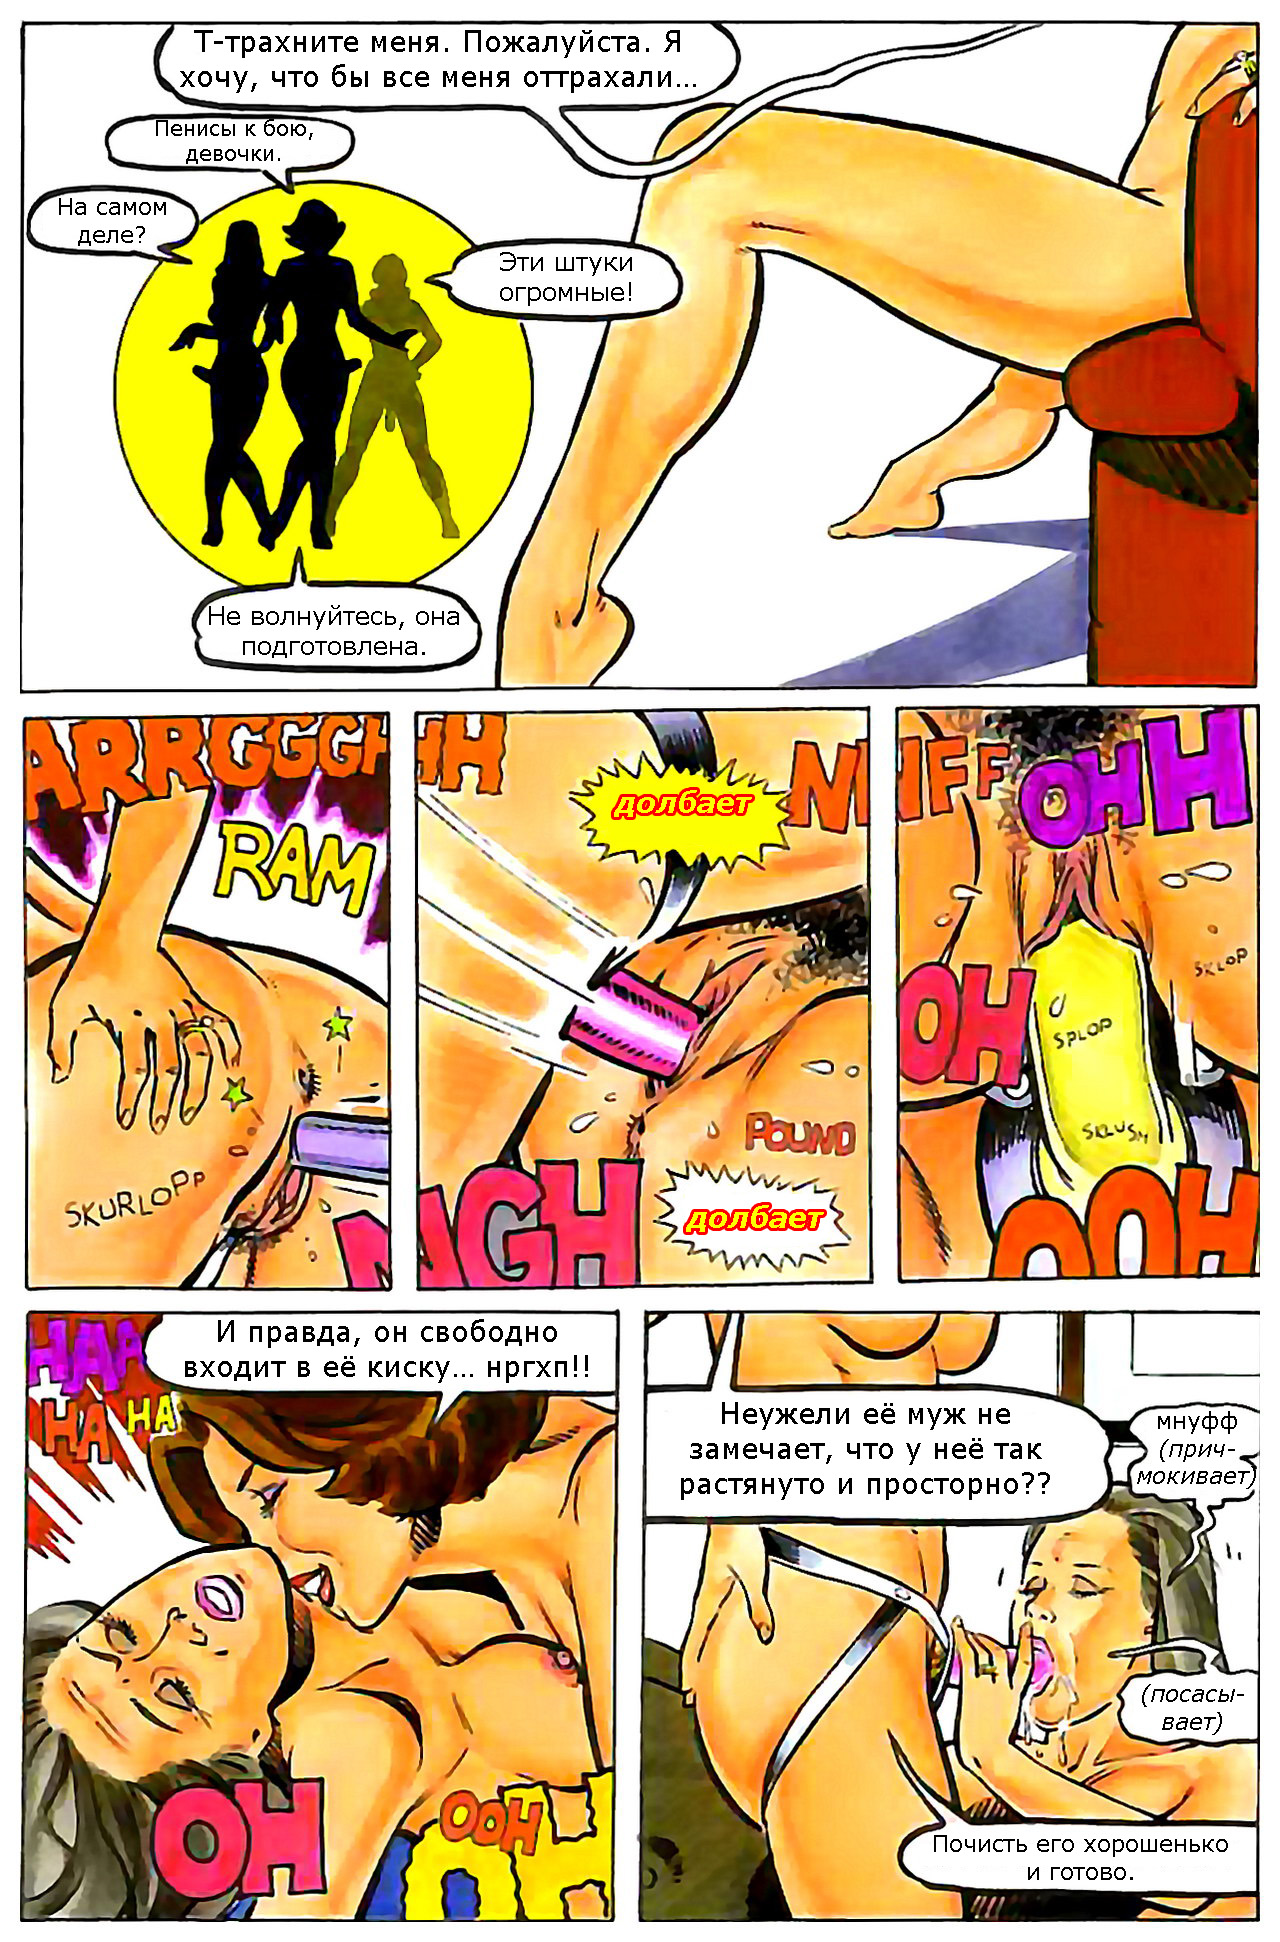 Порно комикс игры домохозяек фото 92